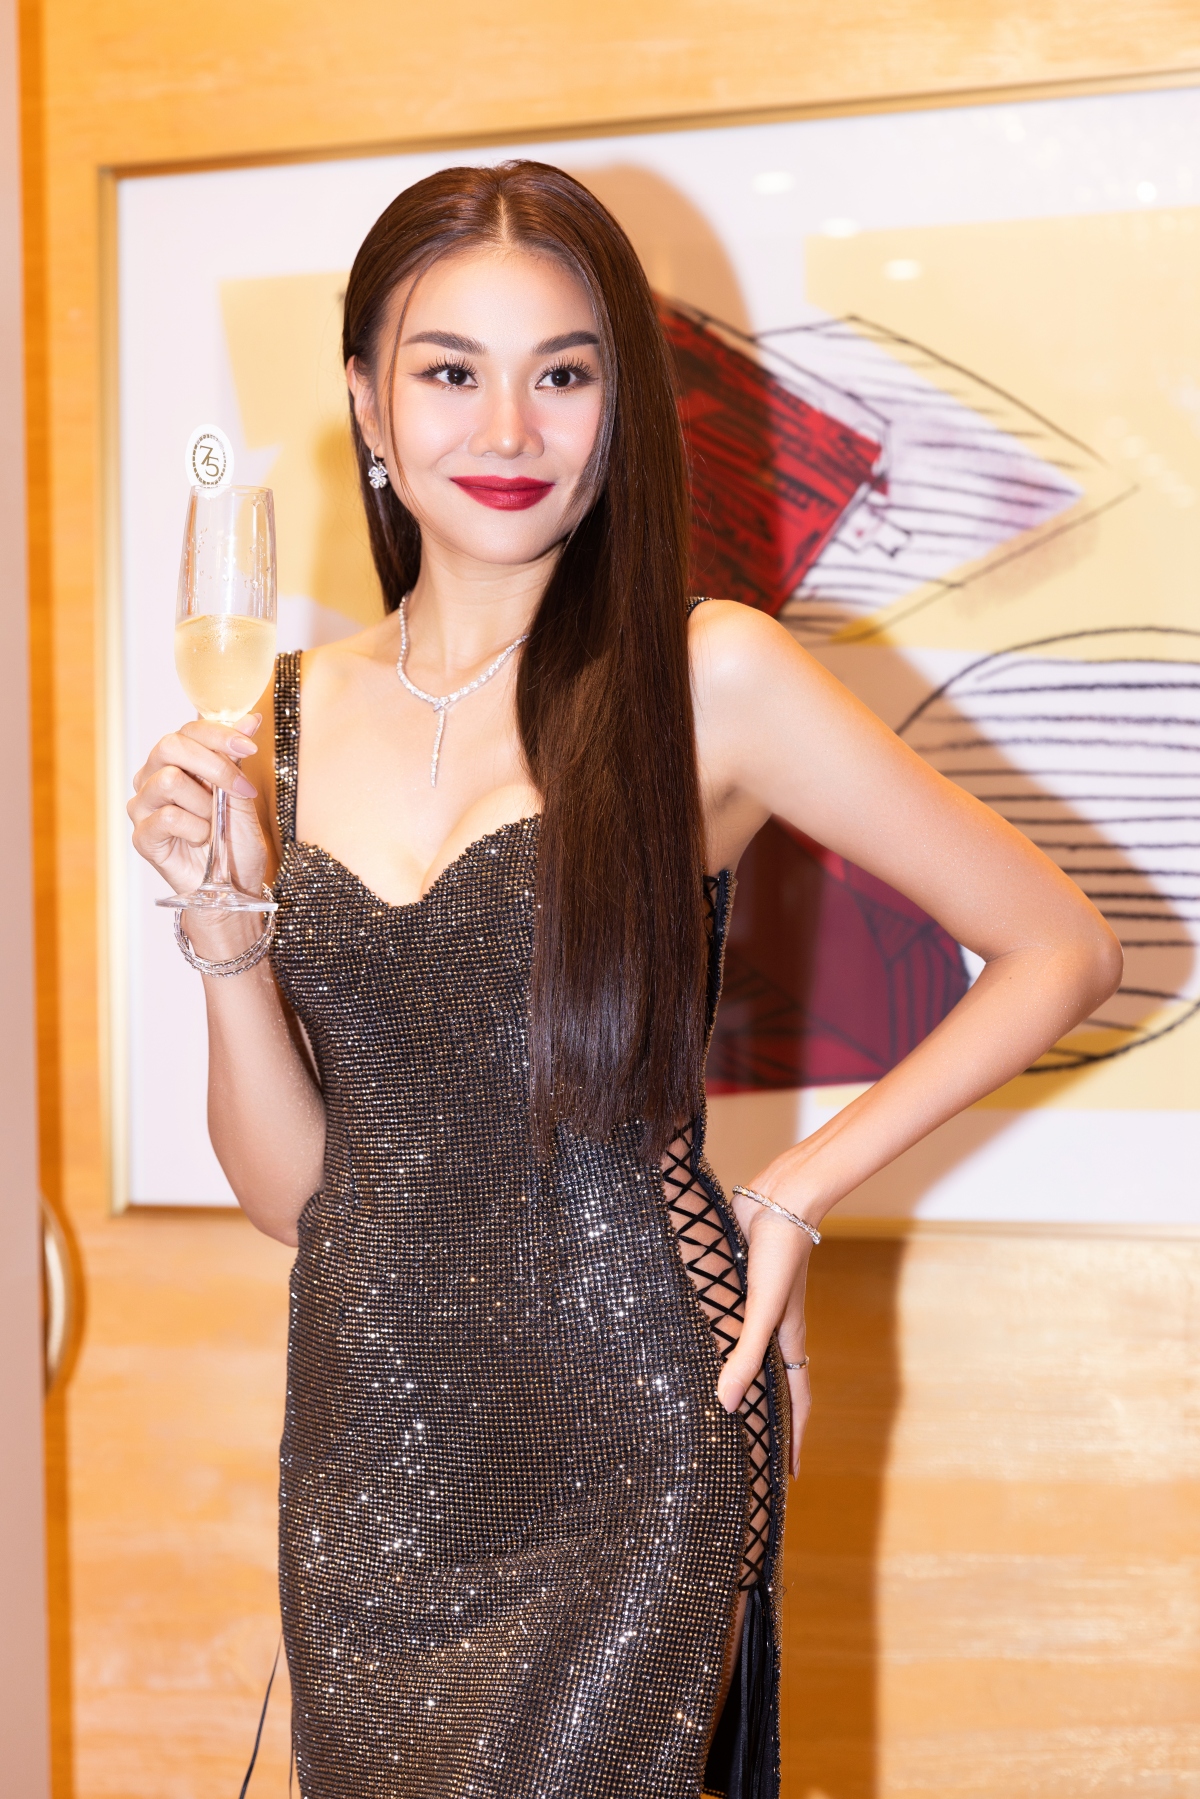 Dàn mỹ nhân Vbiz Hồ Ngọc Hà, Thanh Hằng đeo trang sức tiền tỷ đi dự sự kiện - Ảnh 5